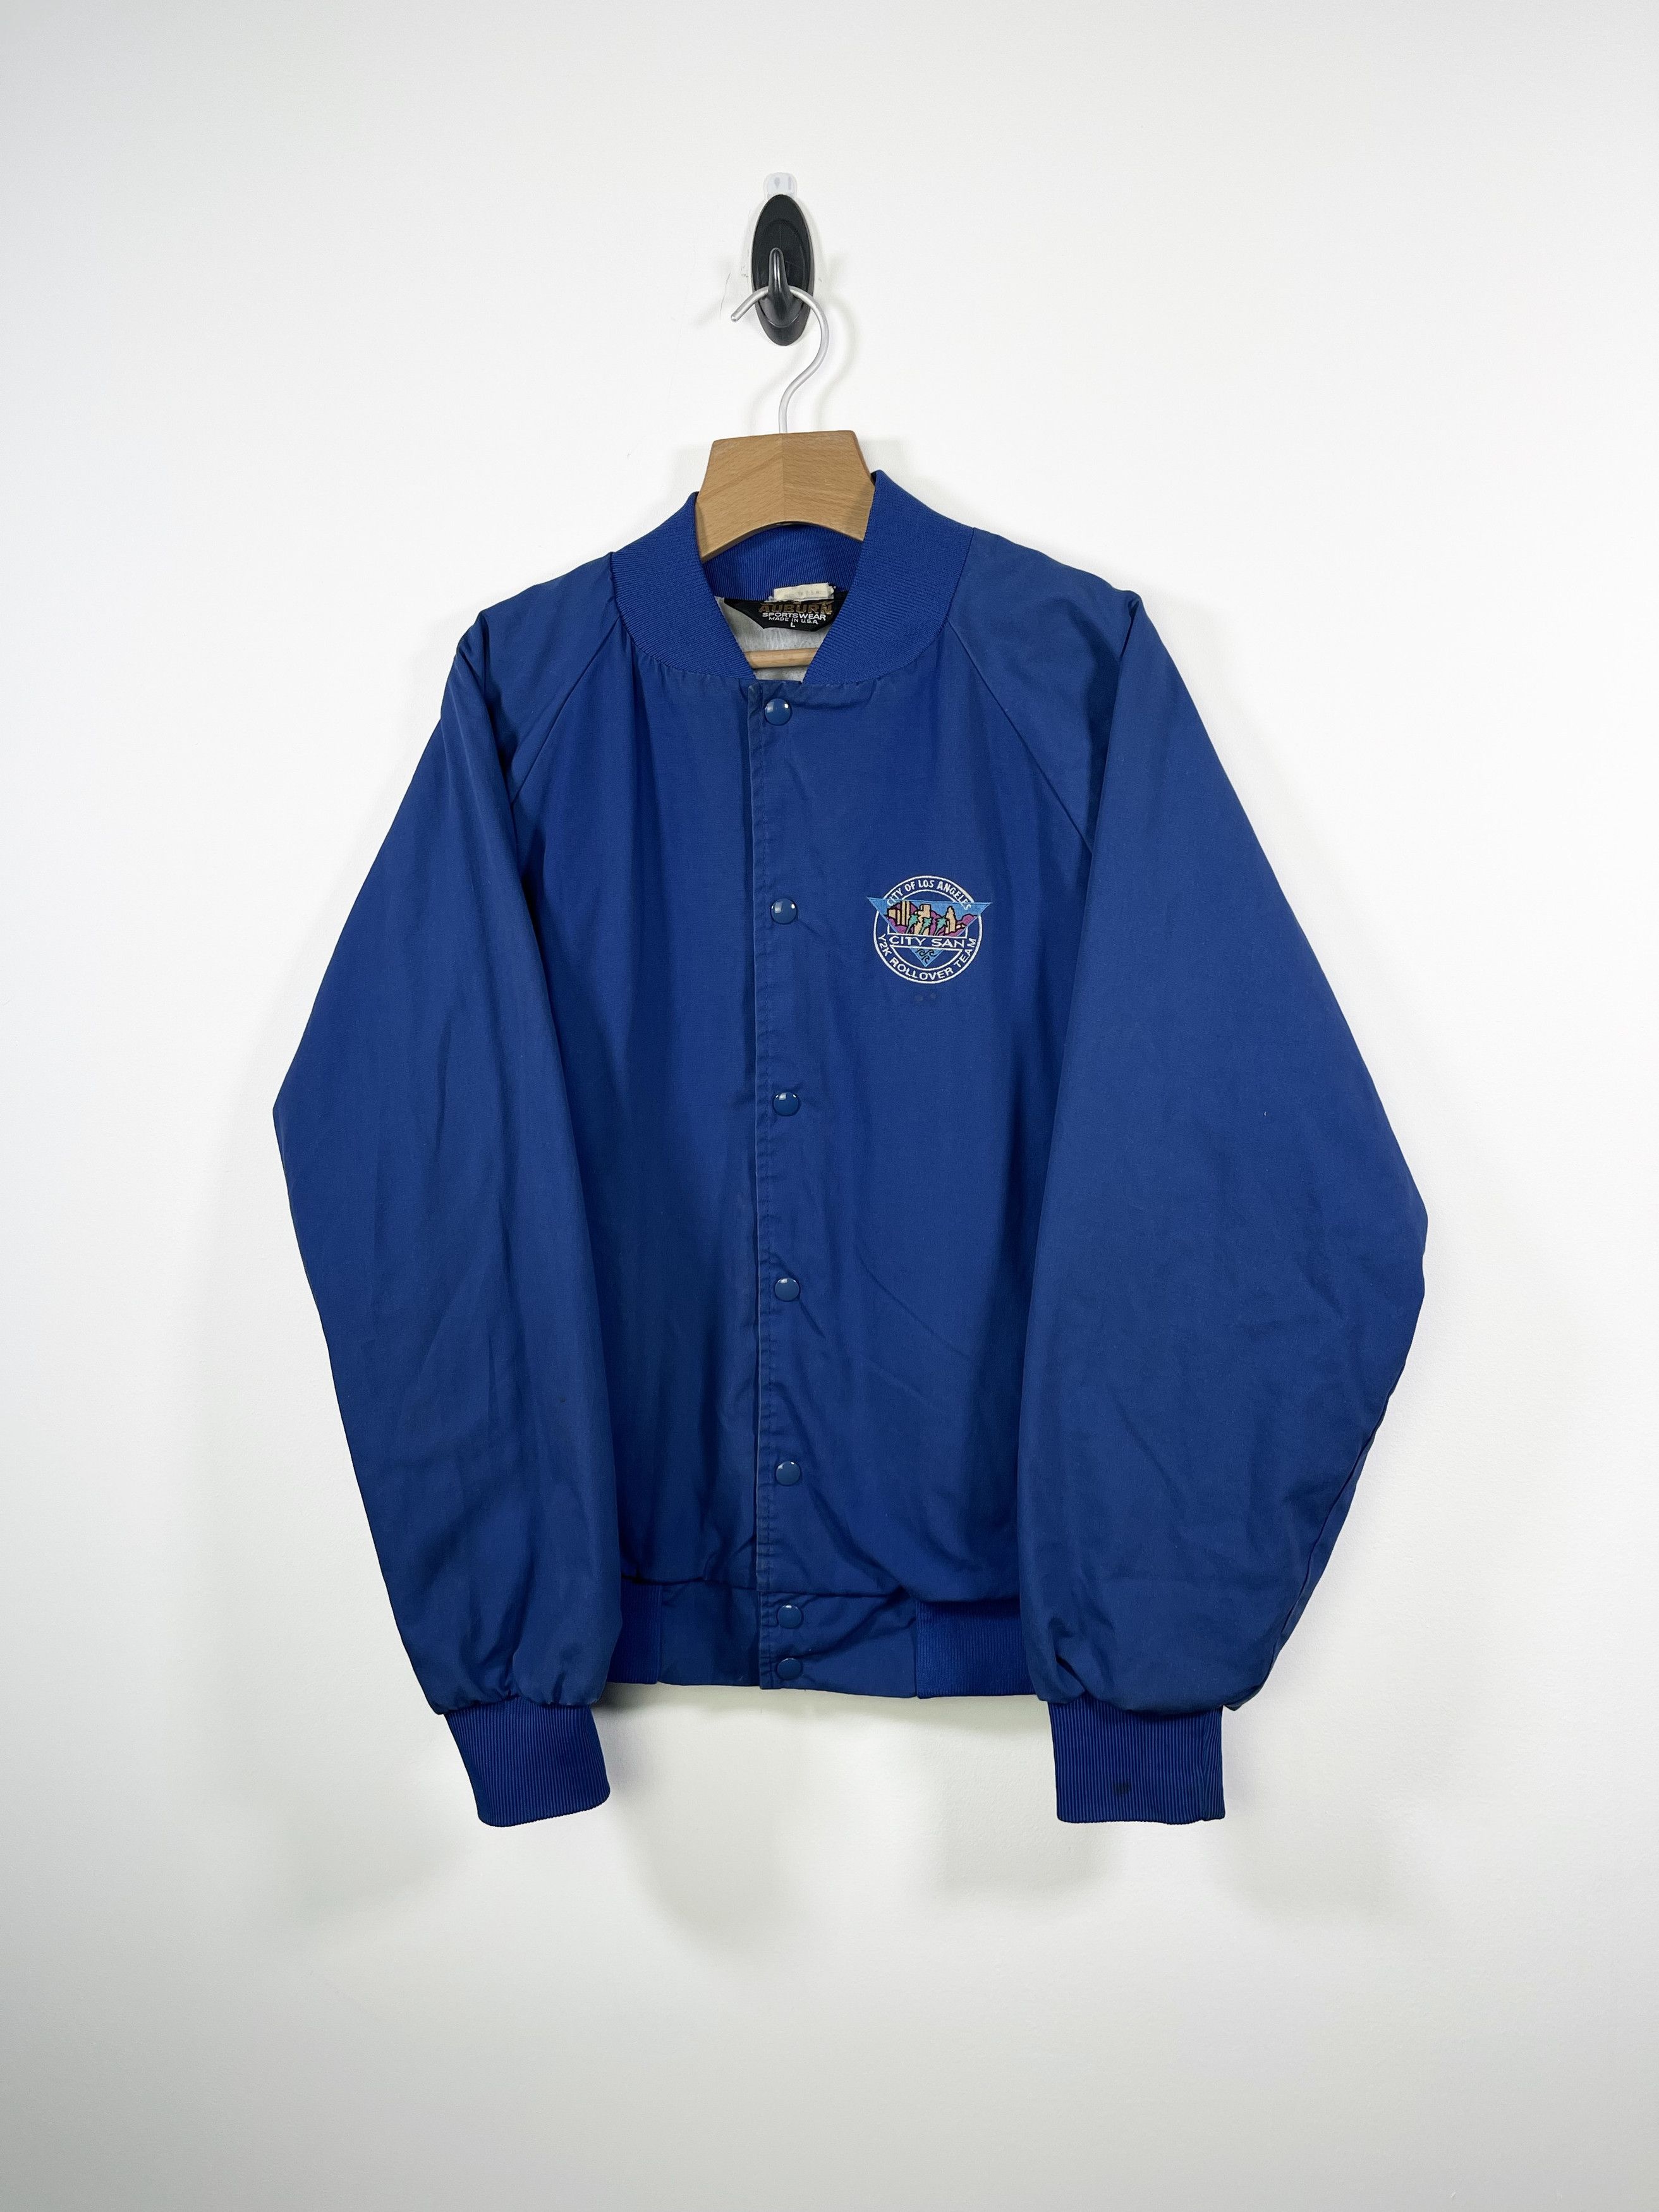 Streetwear Vintage 99 City of Los Angeles Y2K Rollover Jacket | Grailed